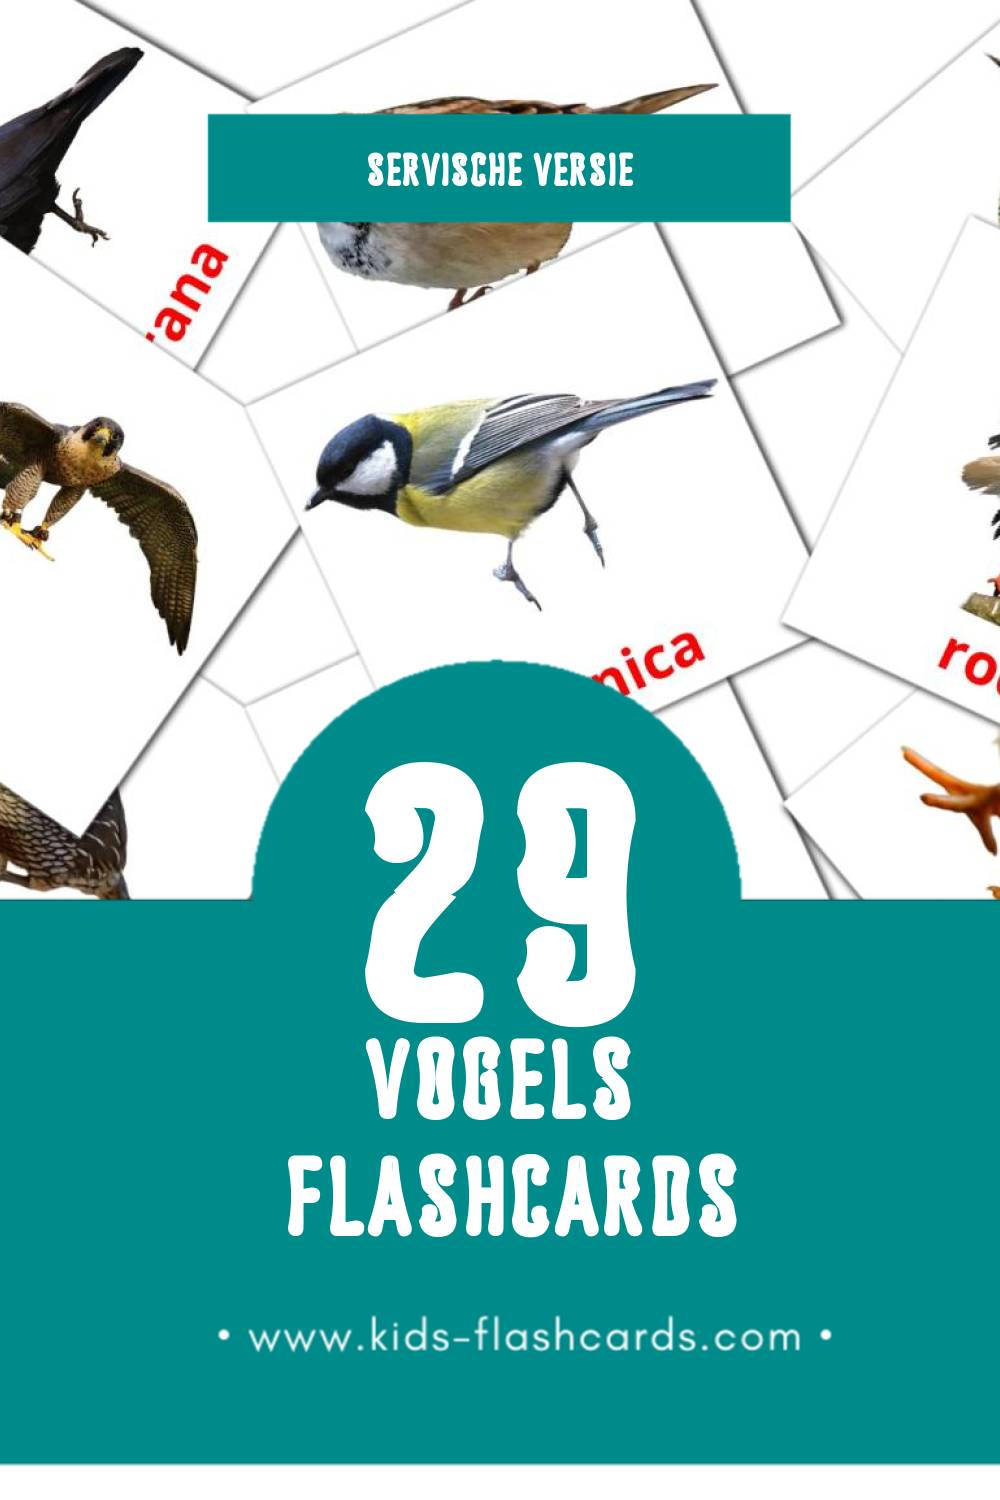 Visuele Ptice Flashcards voor Kleuters (29 kaarten in het Servisch)